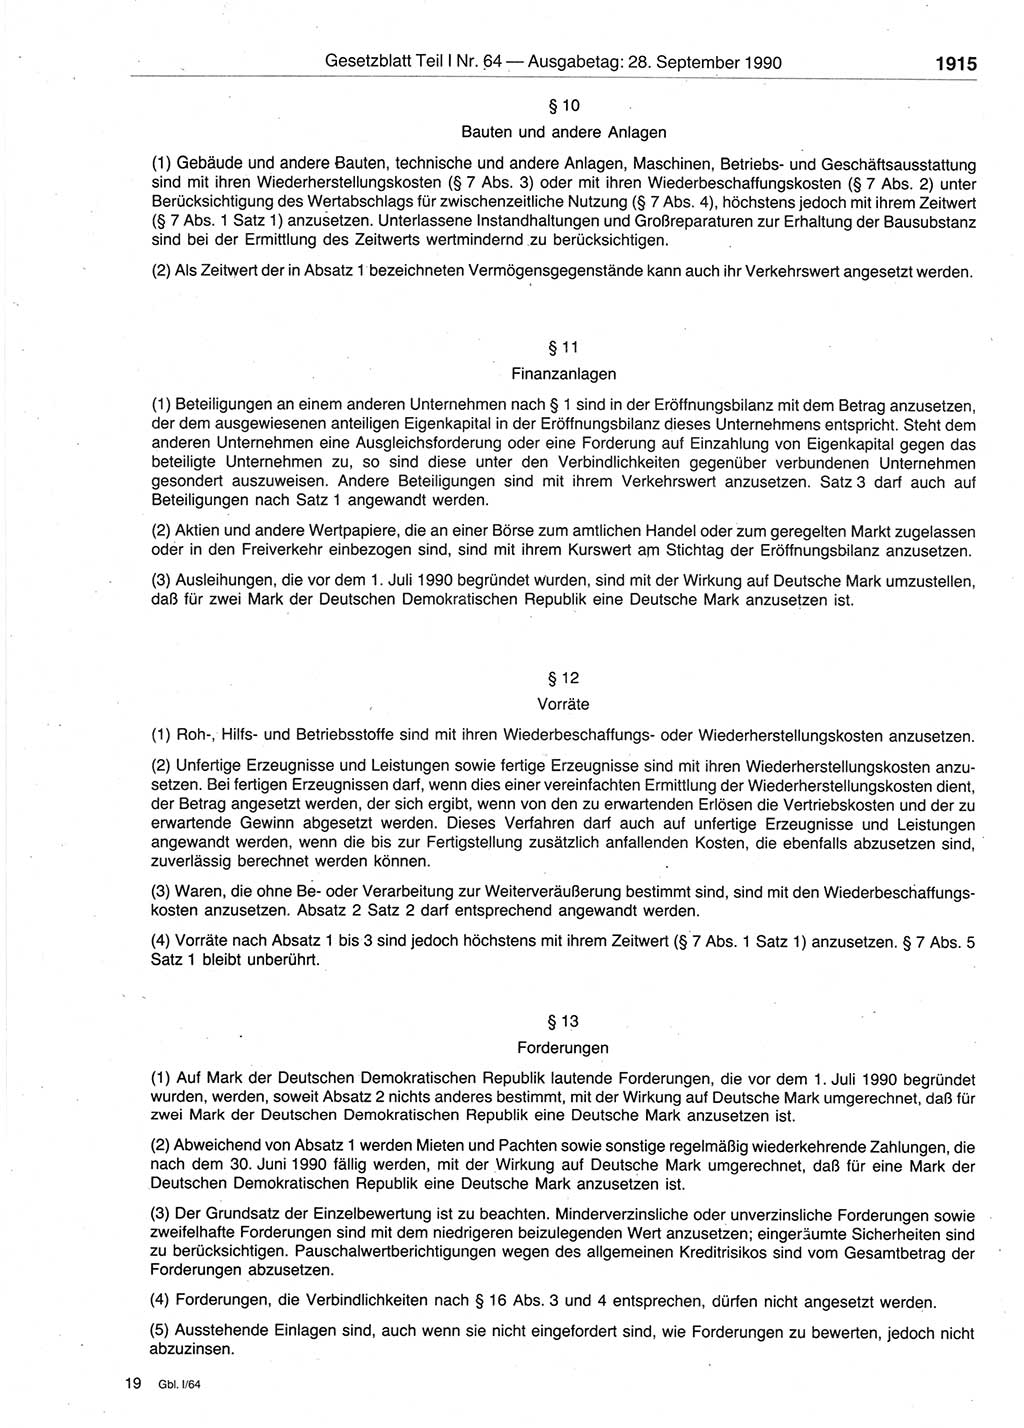 Gesetzblatt (GBl.) der Deutschen Demokratischen Republik (DDR) Teil Ⅰ 1990, Seite 1915 (GBl. DDR Ⅰ 1990, S. 1915)